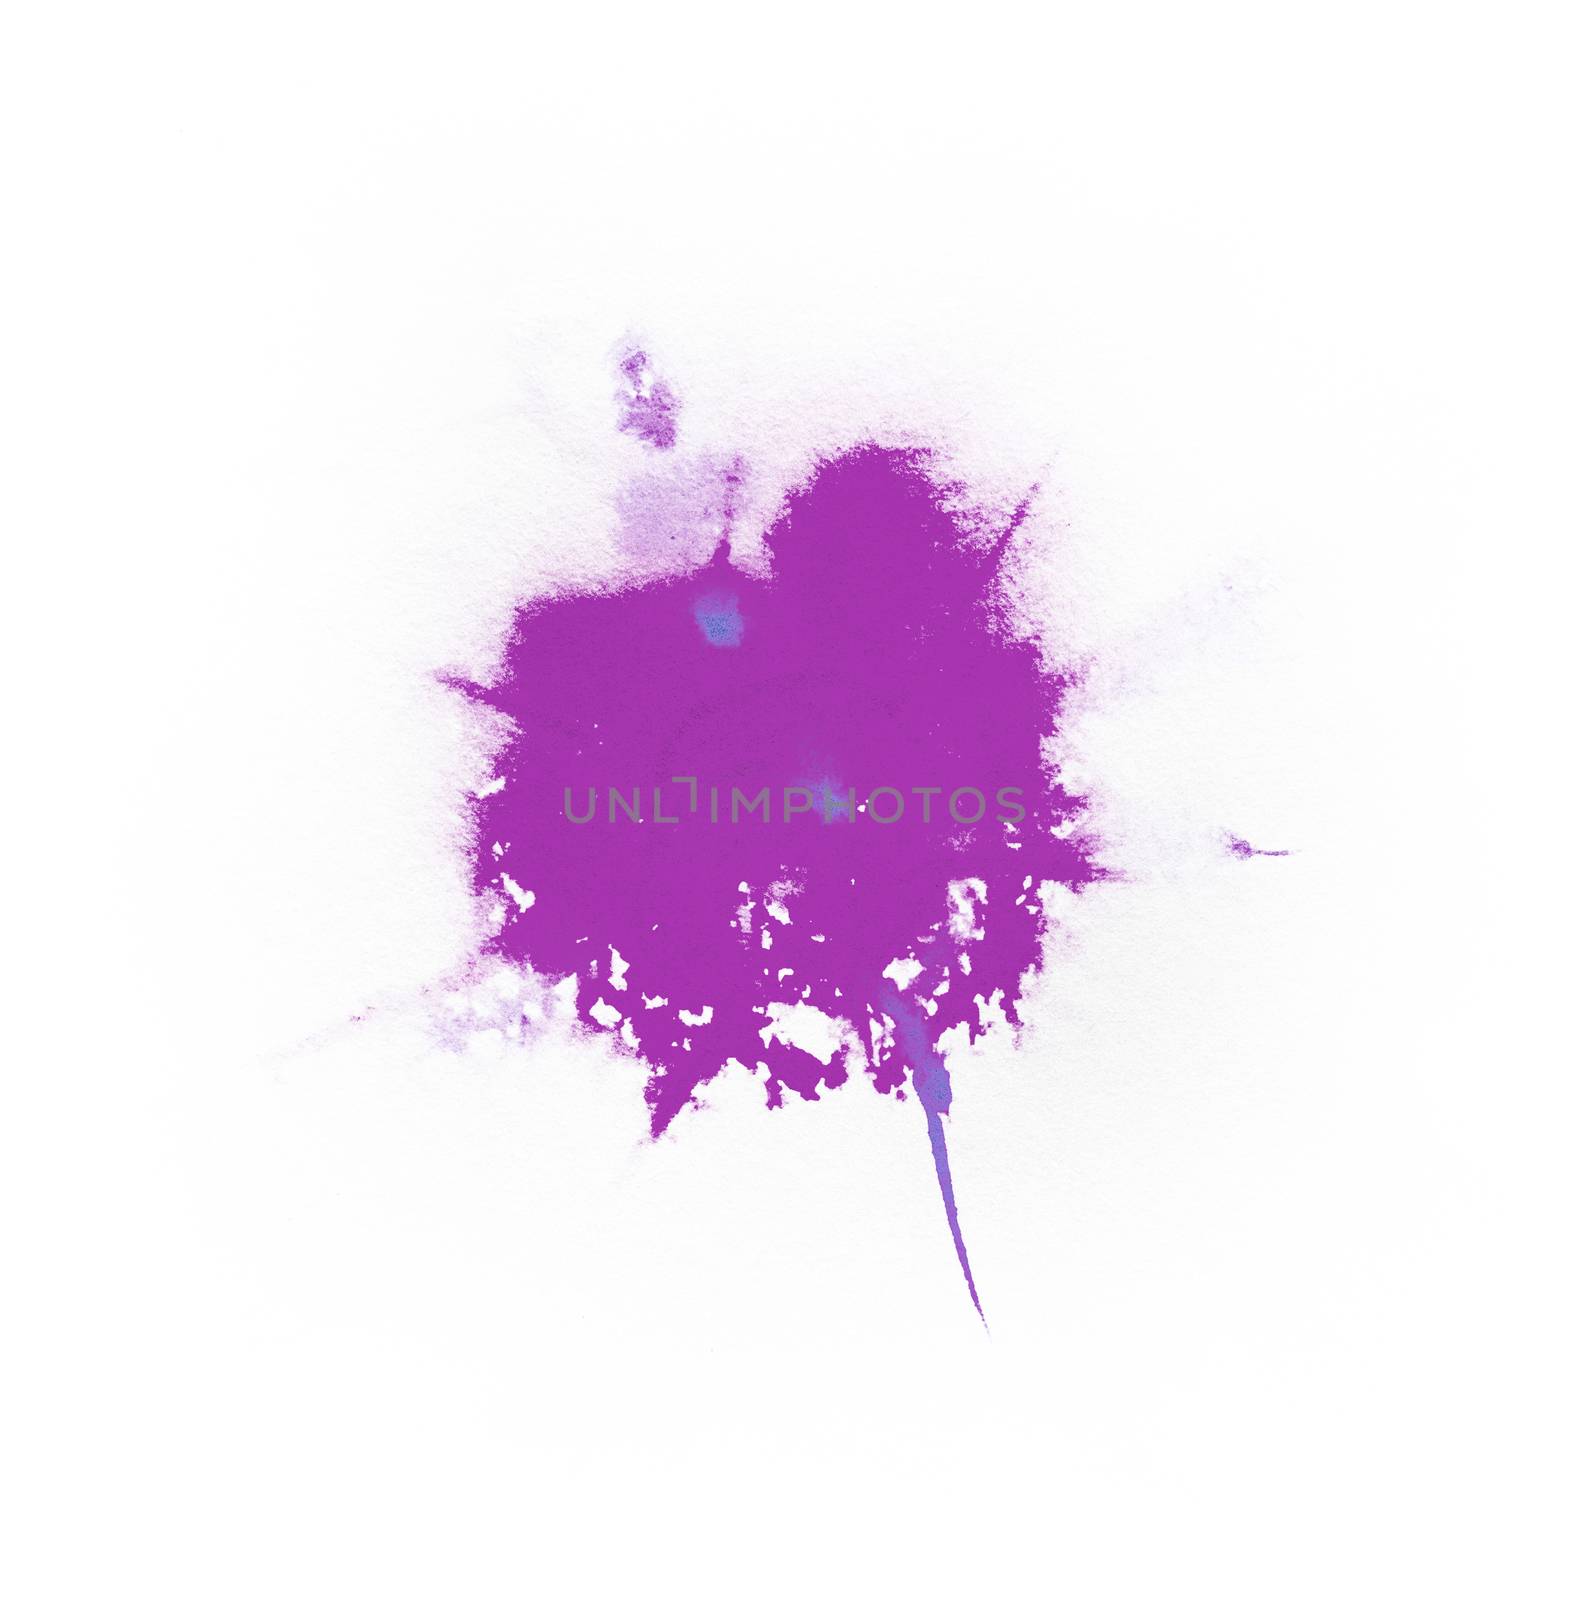 Watercolor Violet color splash on black background